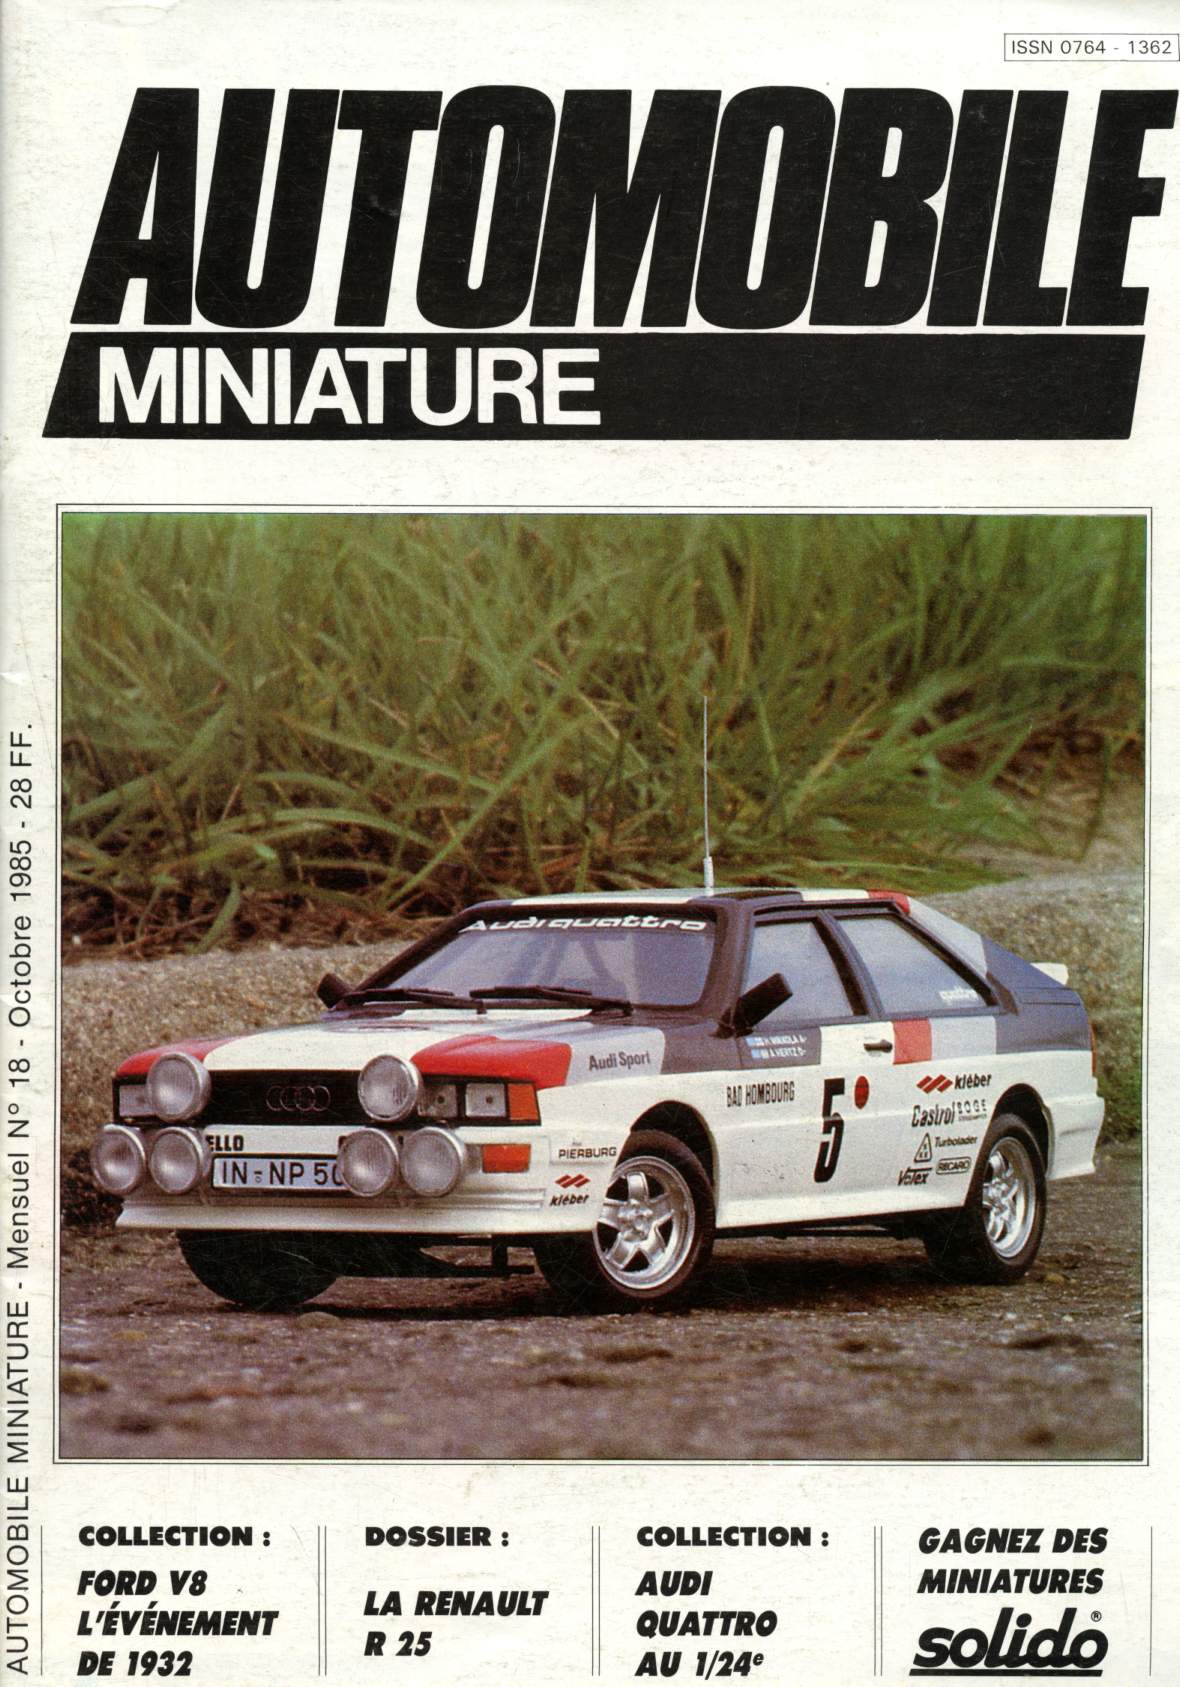 Automobile miniature n18 - Octobre 1985 : Ford V8, l'vnement de 1932 - La Renault R 25 - Audi Quattro Esci & Tamita 1/24e - Miniatures Solido -